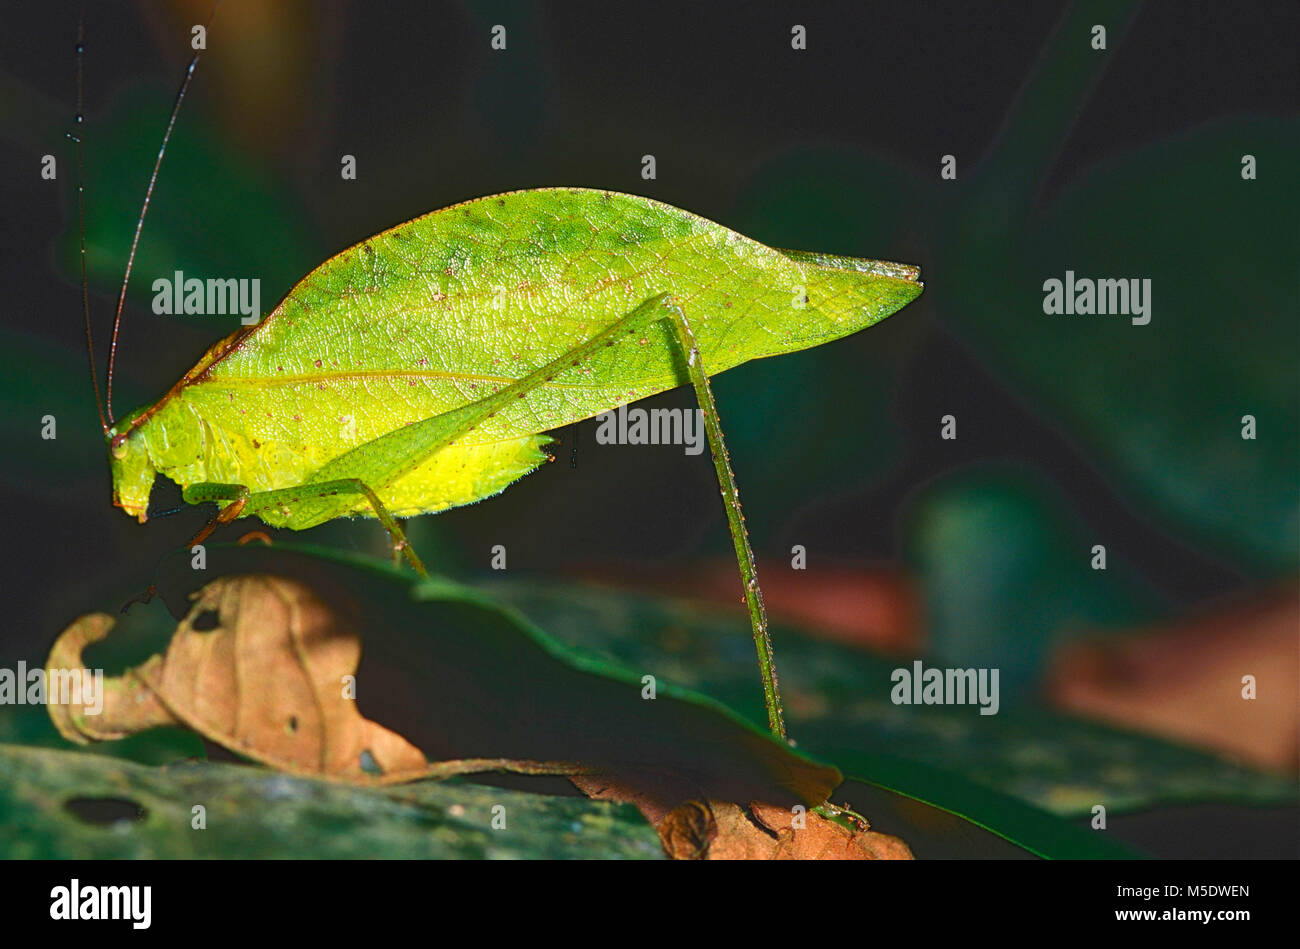 Leaf-mimic Katydid, Orophus tesselatus, Tettigoniidae, Katydid, insect, animal, Costa Rica Stock Photo